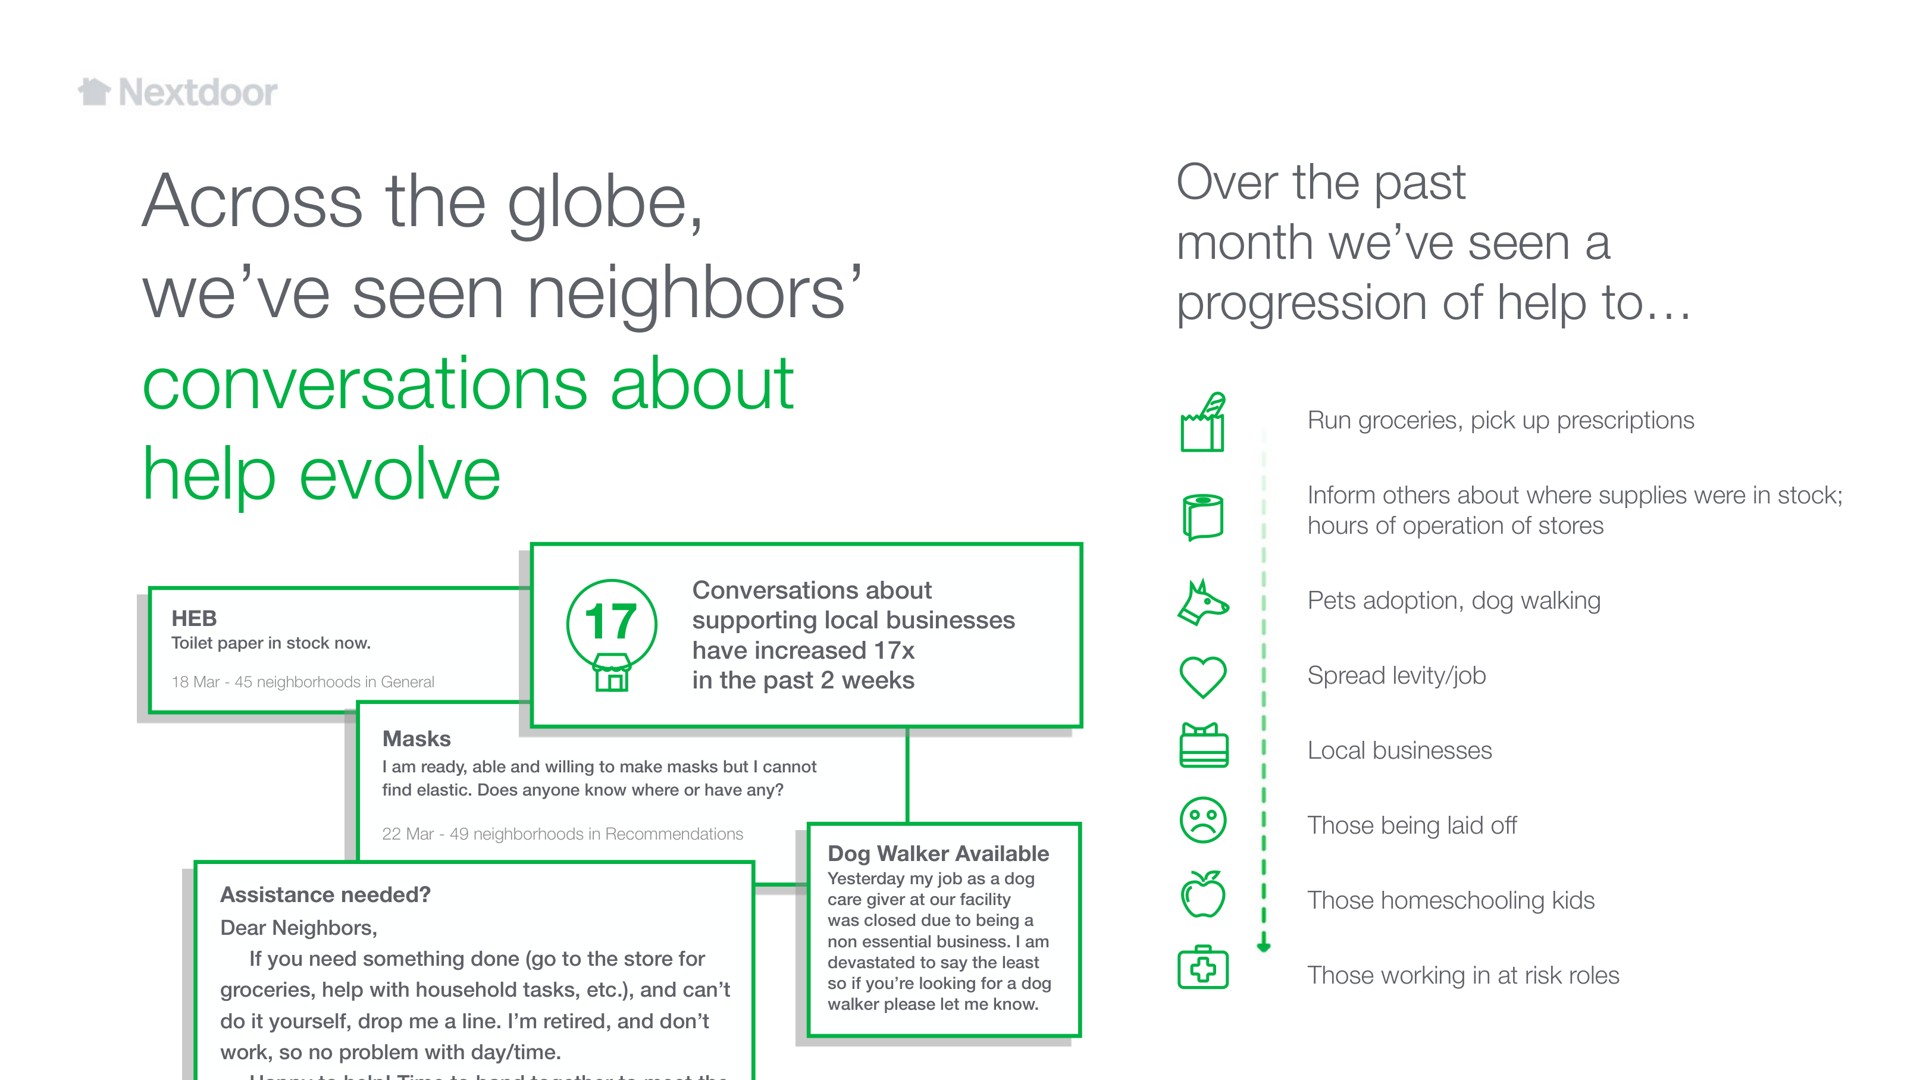 across the globe we seen neighbors conversations about help evolve a a | Nextdoor